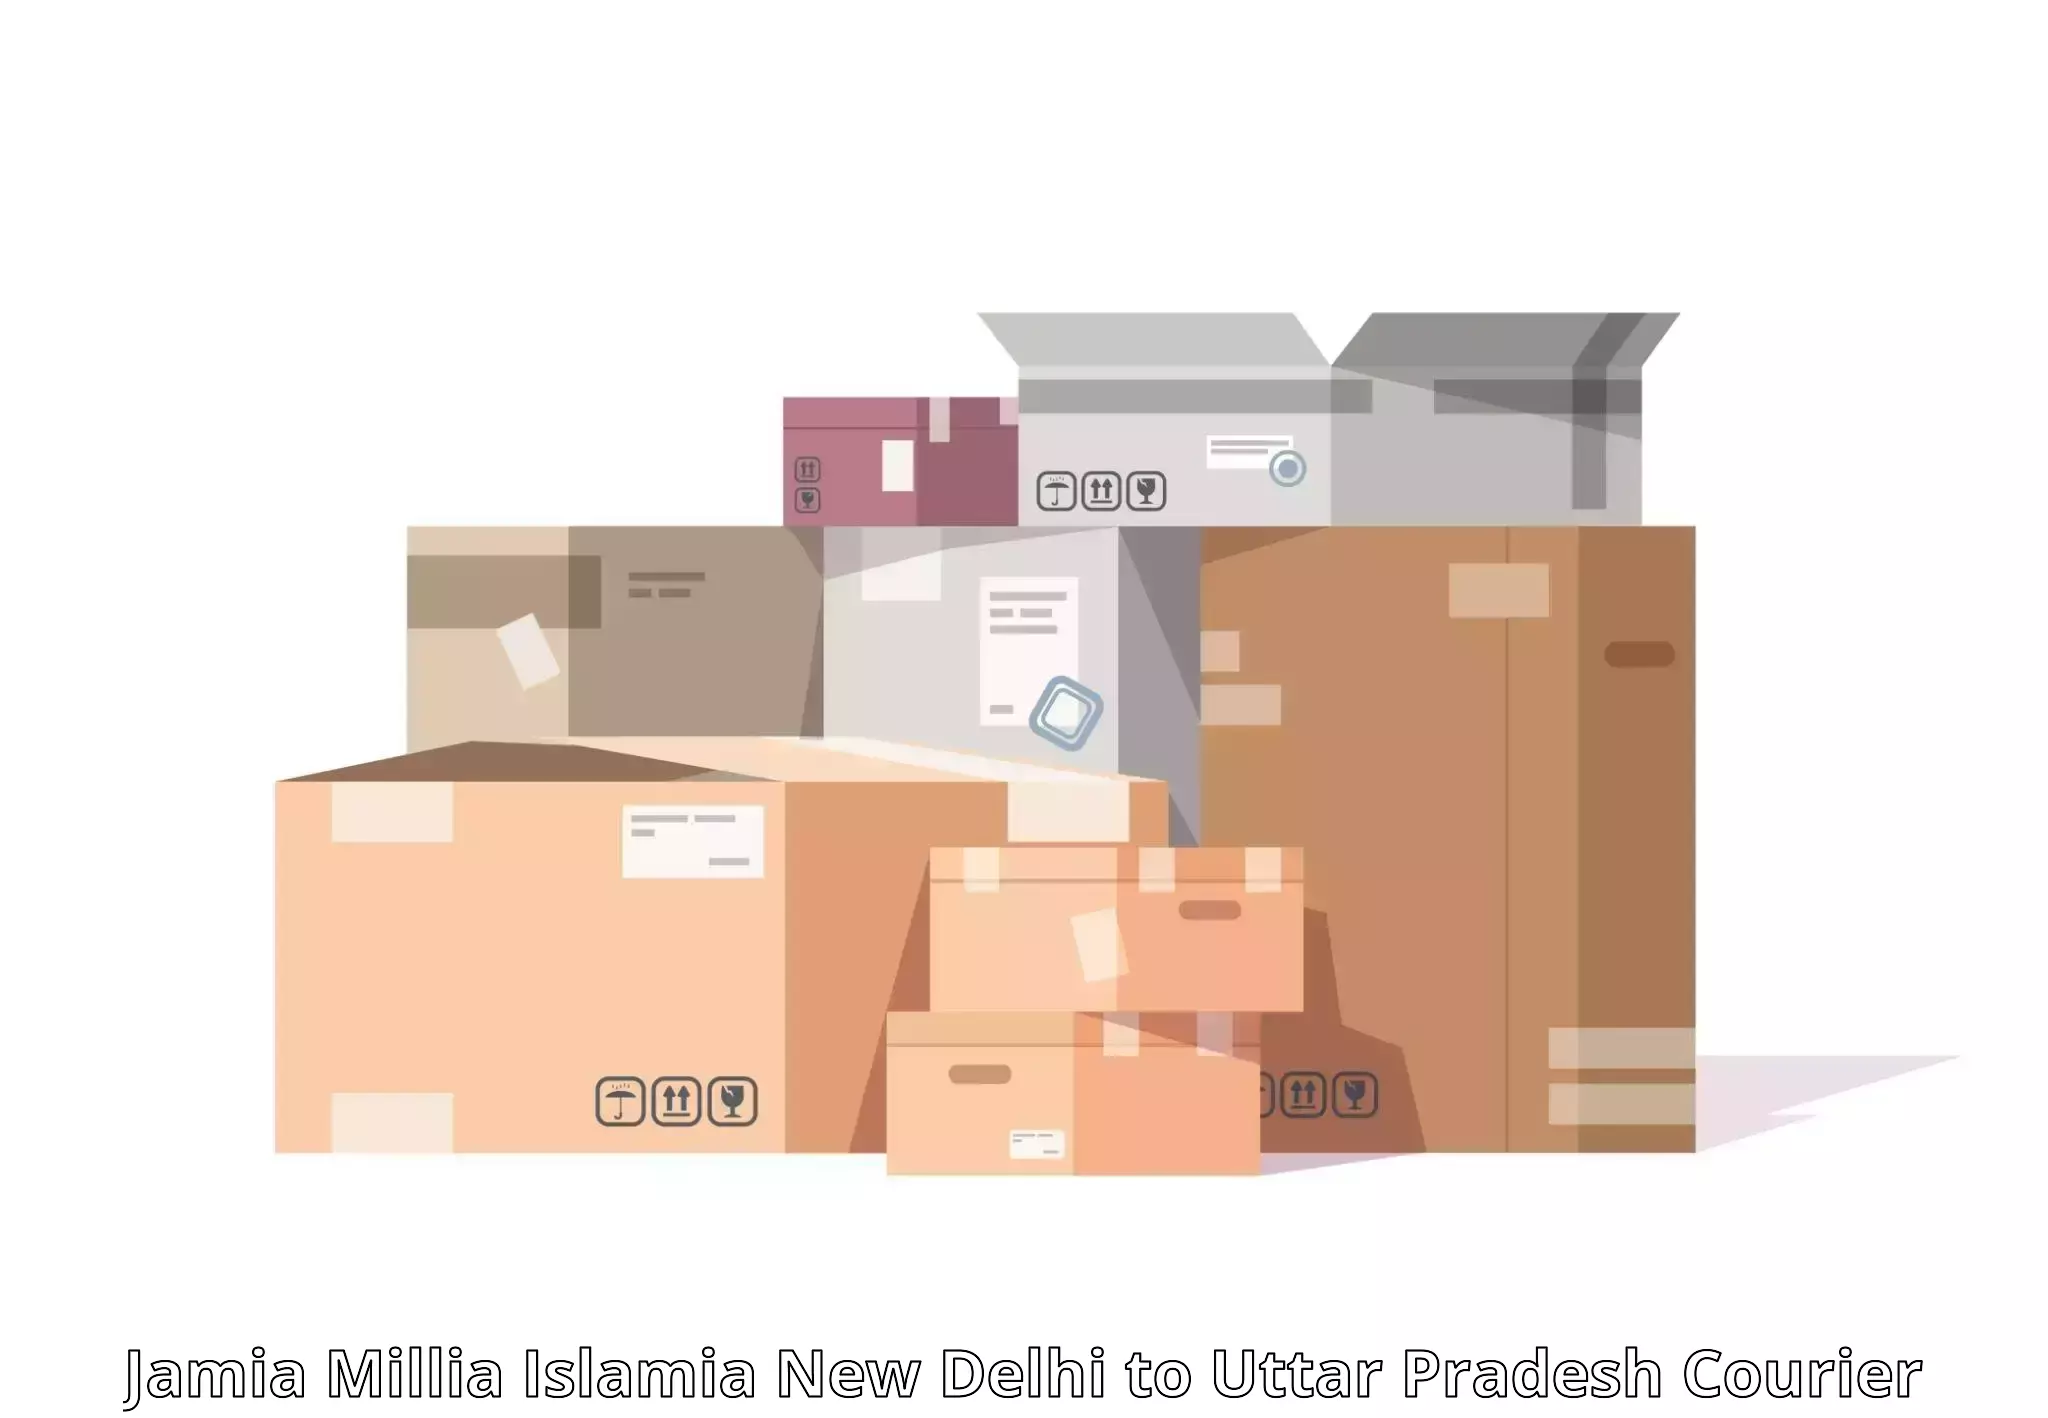 Efficient freight service Jamia Millia Islamia New Delhi to Mawana